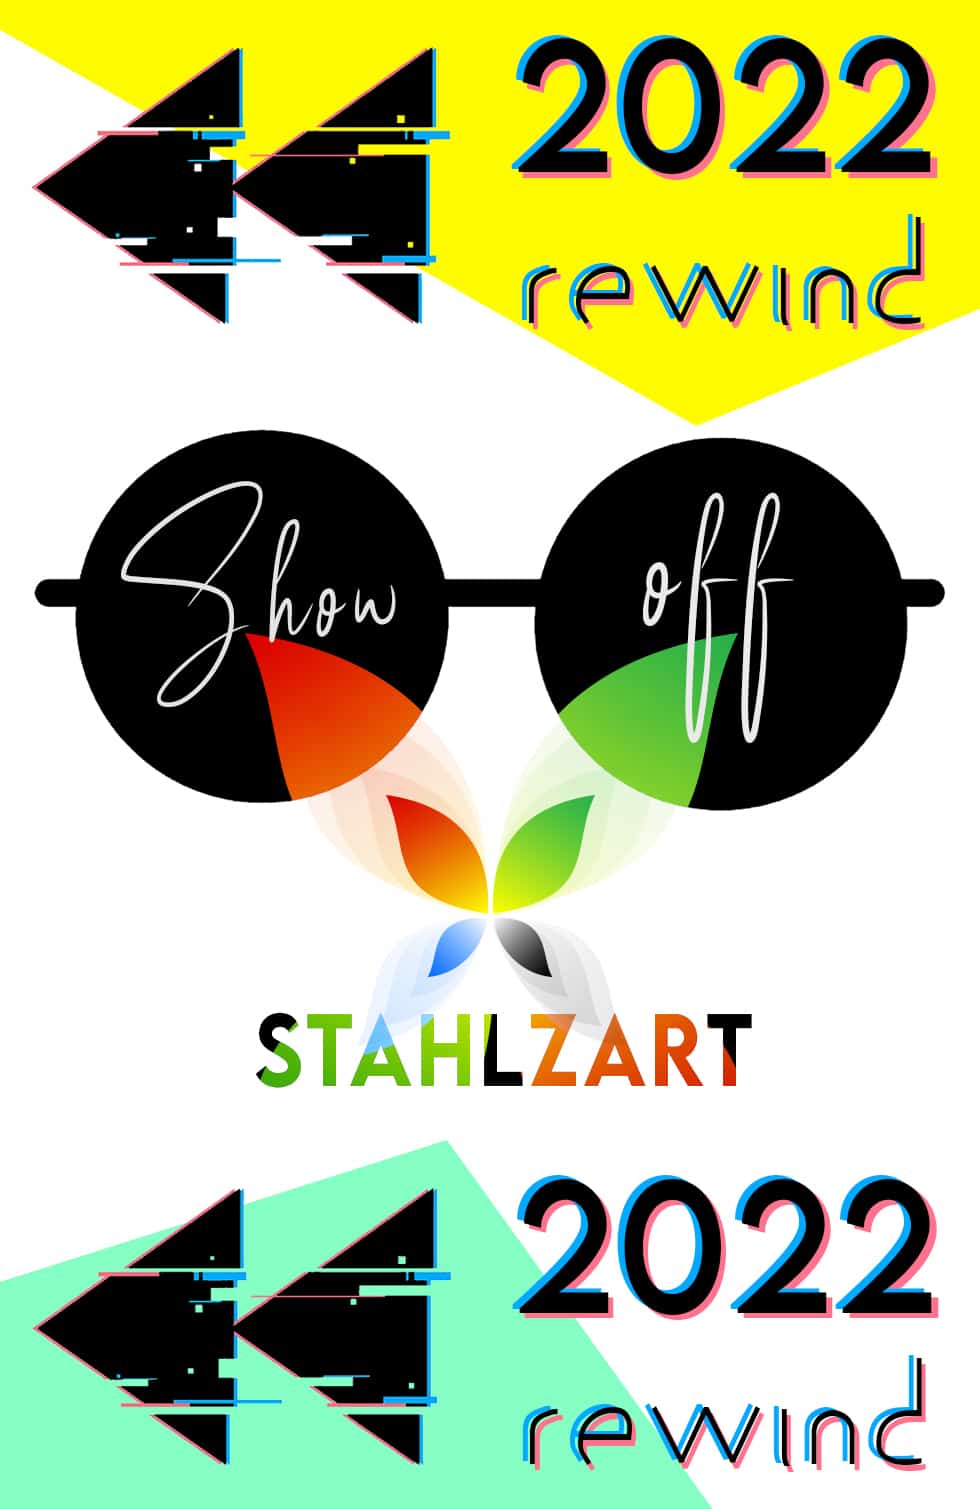 stahlzart-show-off-2022-rewind-design-moebel-modern-zeitlos-weiss-schwarz-grau-holz-eiche-metall-modern-industrial-massivholz-wildeiche-nussbaum-buche-akazie-wohnzimmer-schlafzimmer-flur